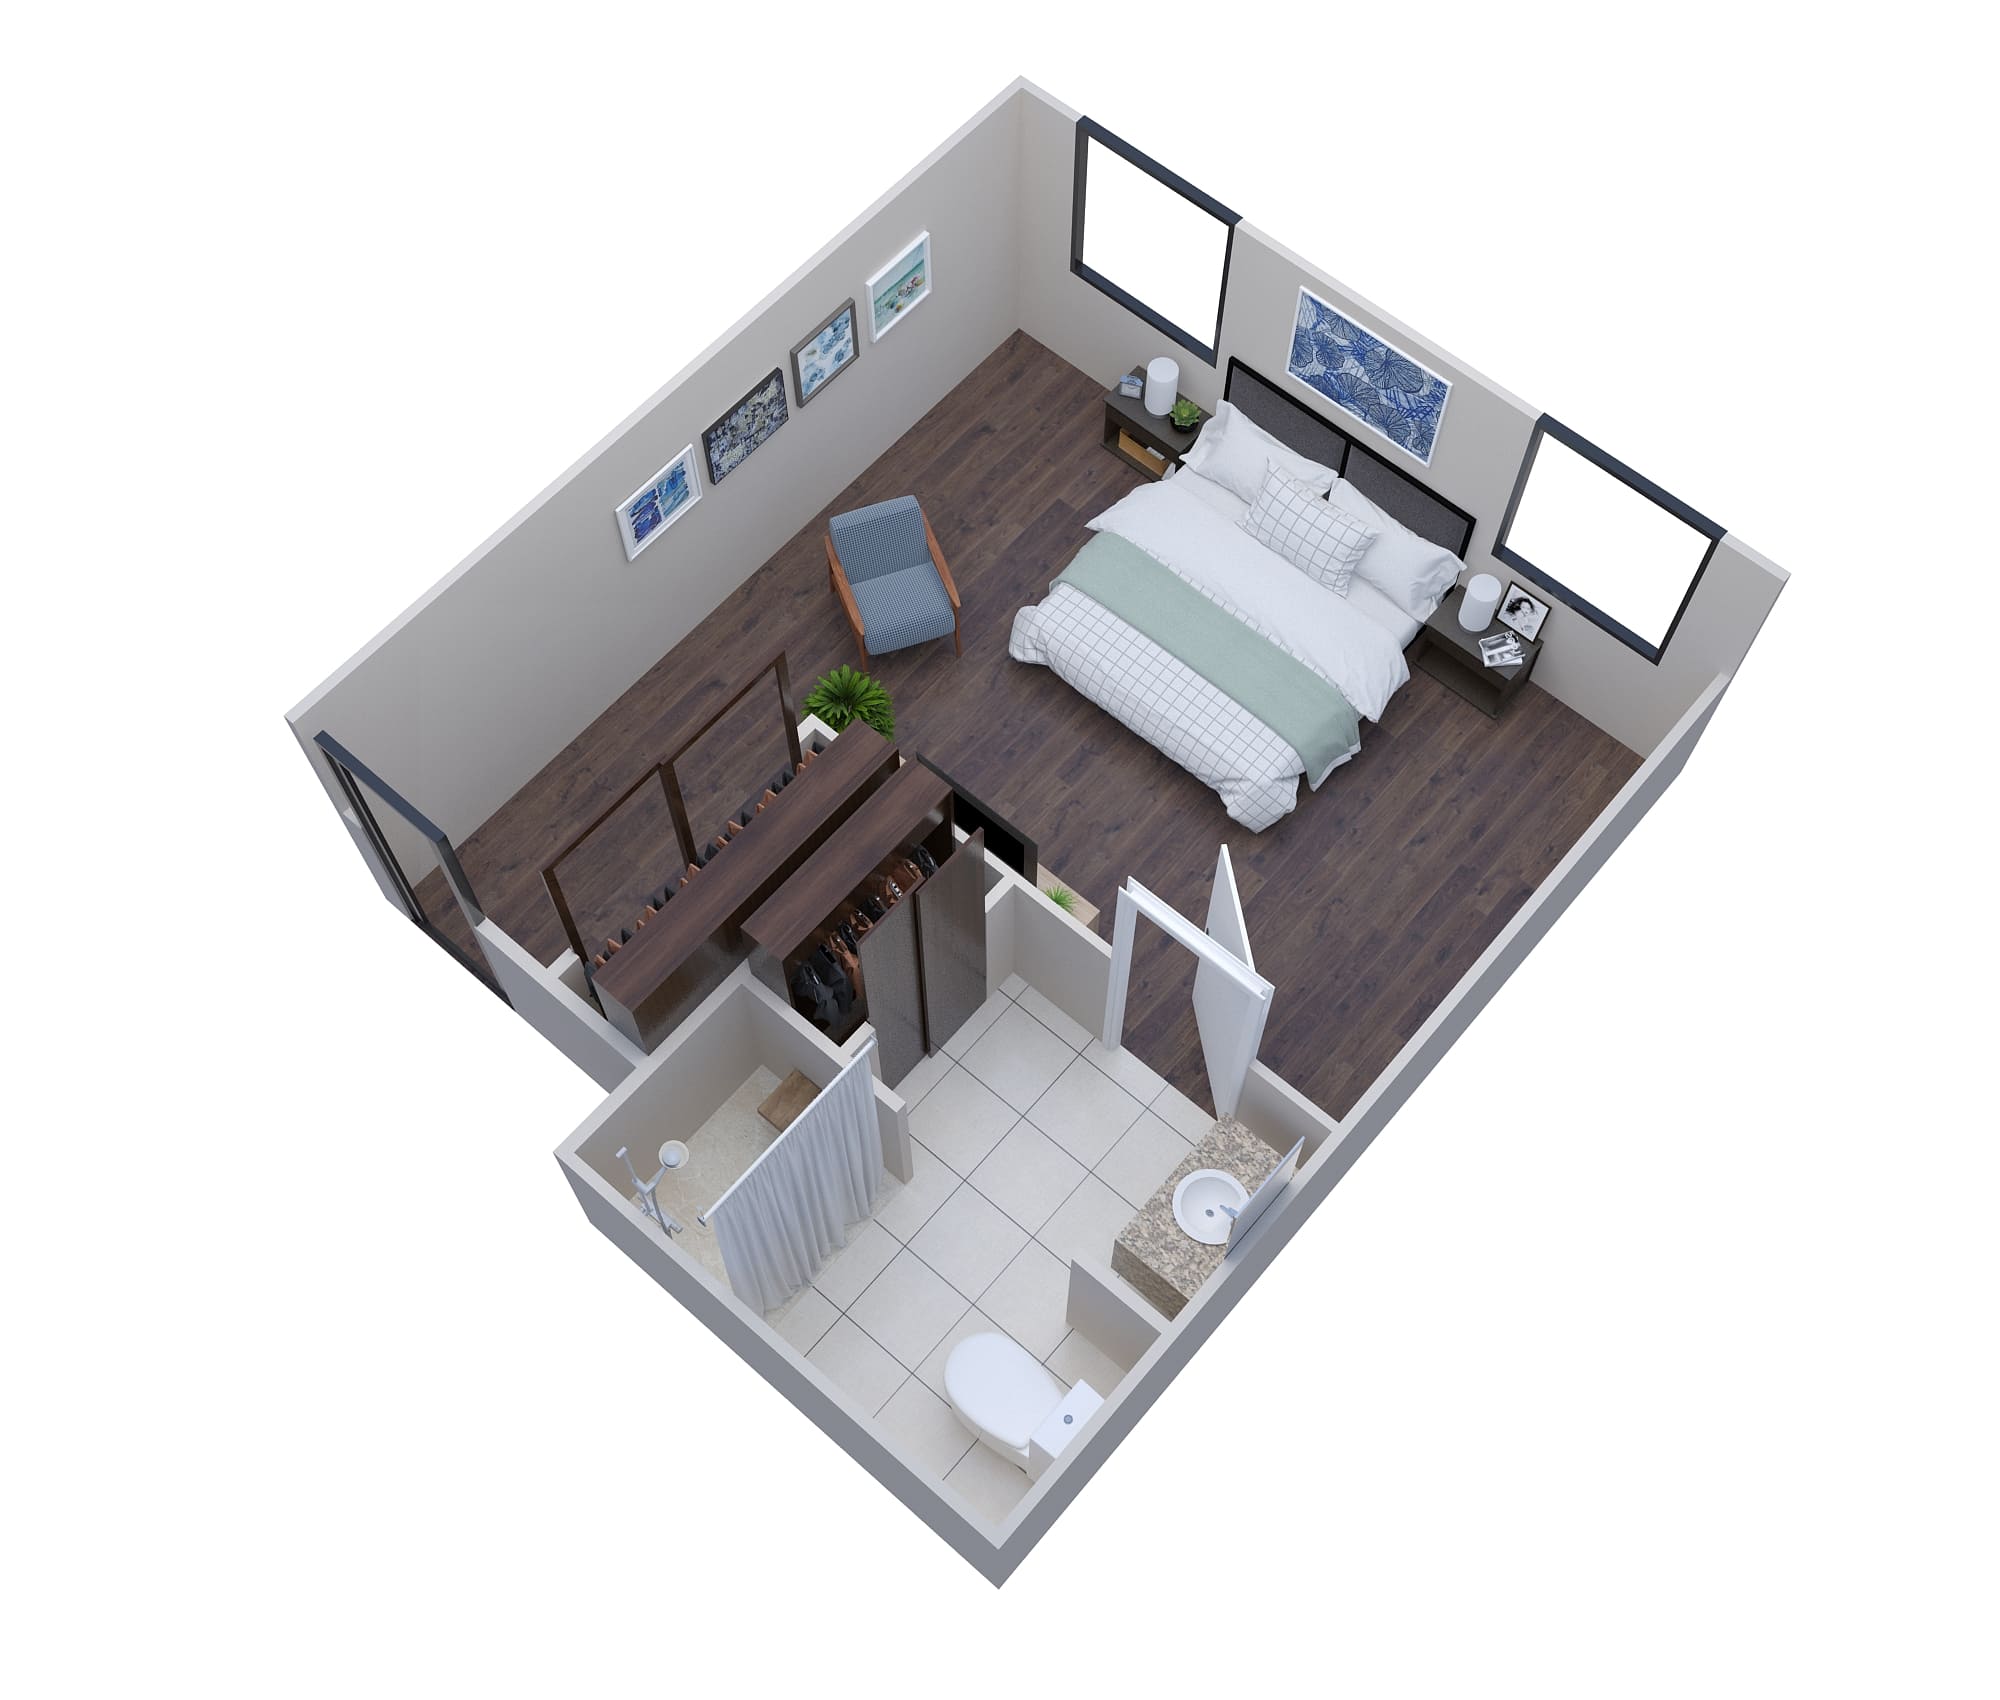 3D-Studio-floor-plan-design-rendering-washington-dc